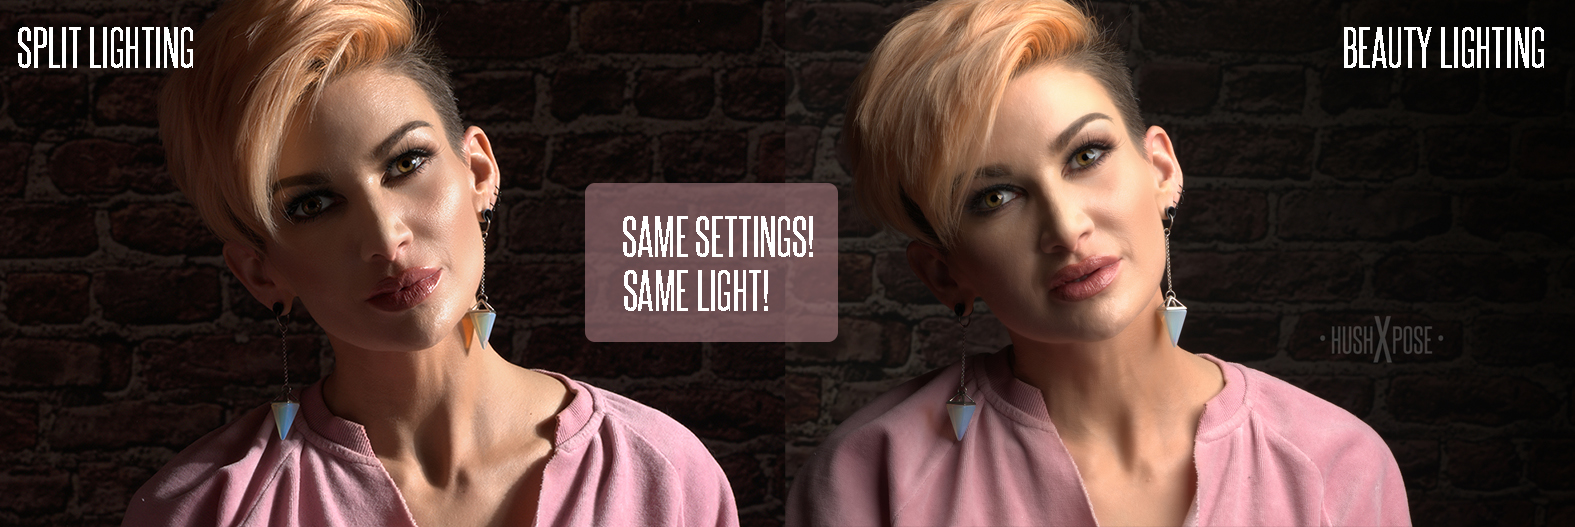 split lighting vs beauty lighting